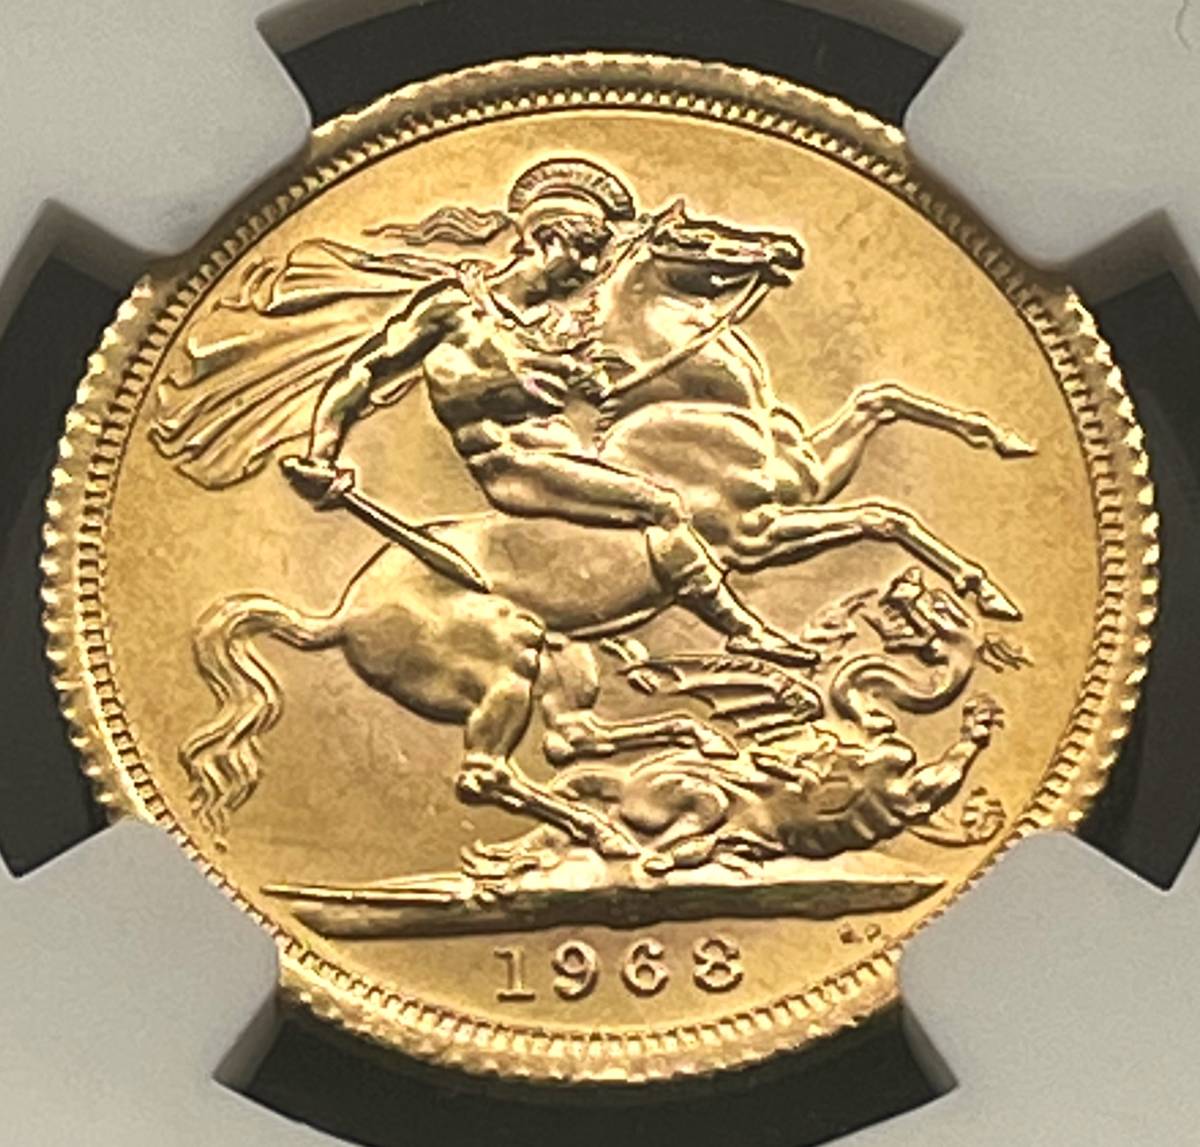 ソブリン金貨 1968年 イギリス 竜退治 エリザベス2世 セントジョージ